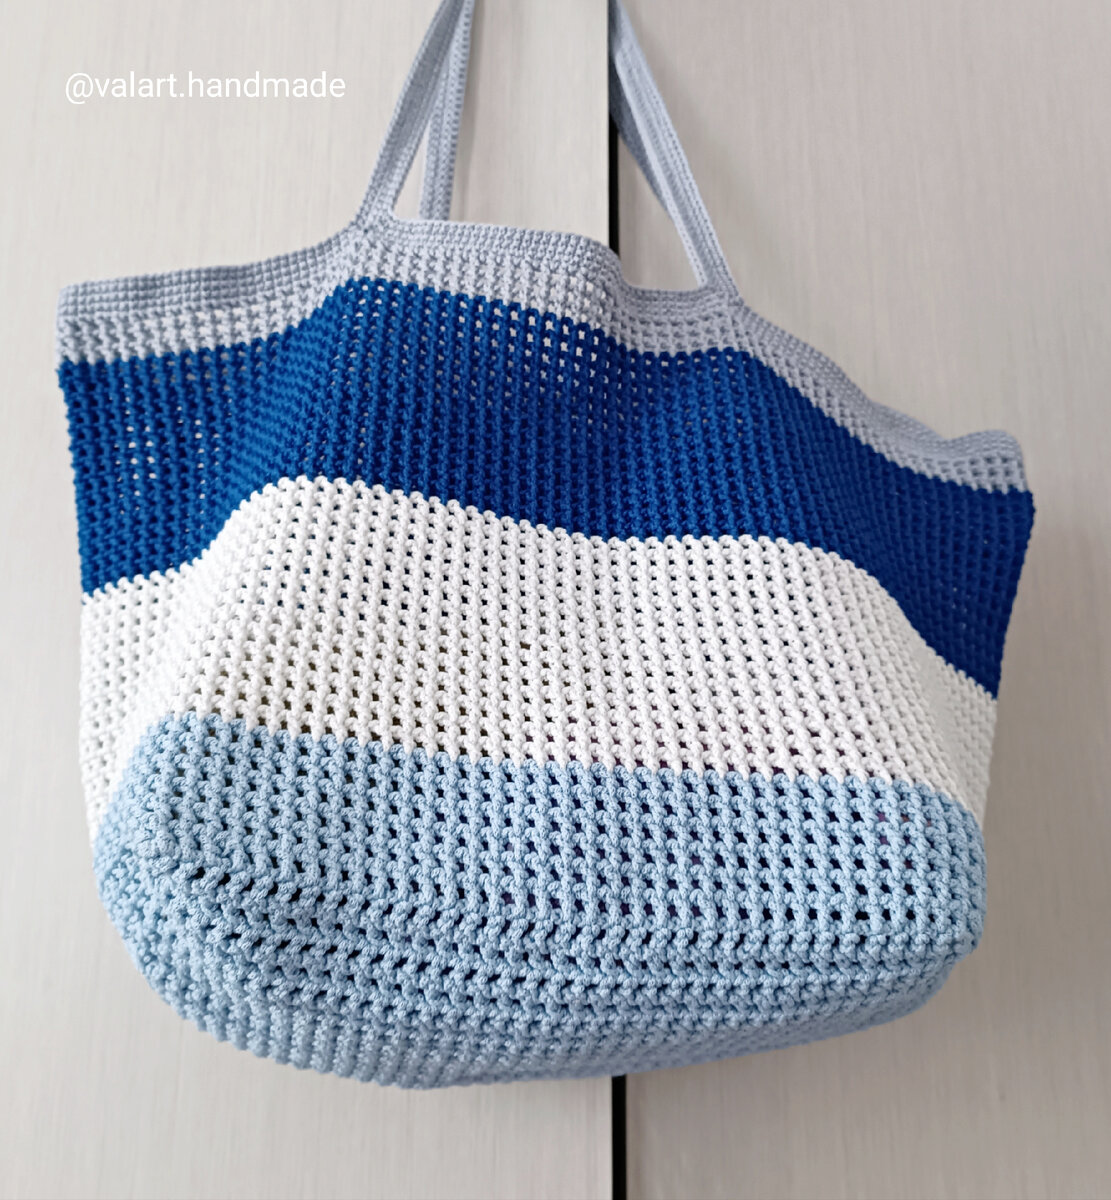 Xelena crochets: Как связать сумку с квадратным дном крючком